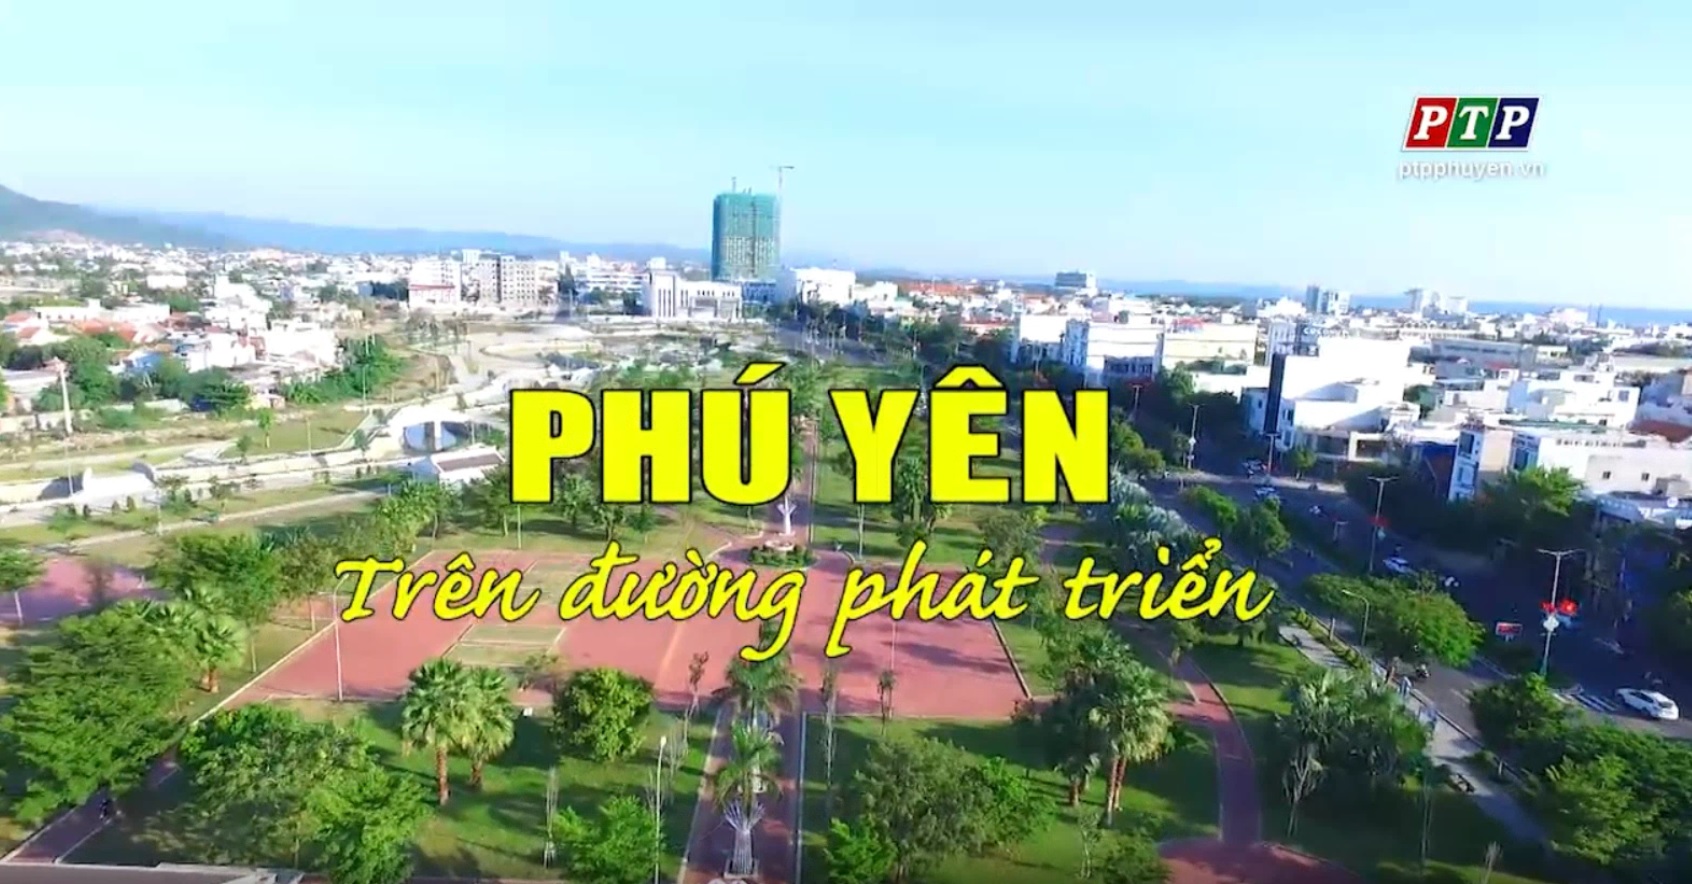 Ps: Phú Yên - Trên Đường Phát Triển